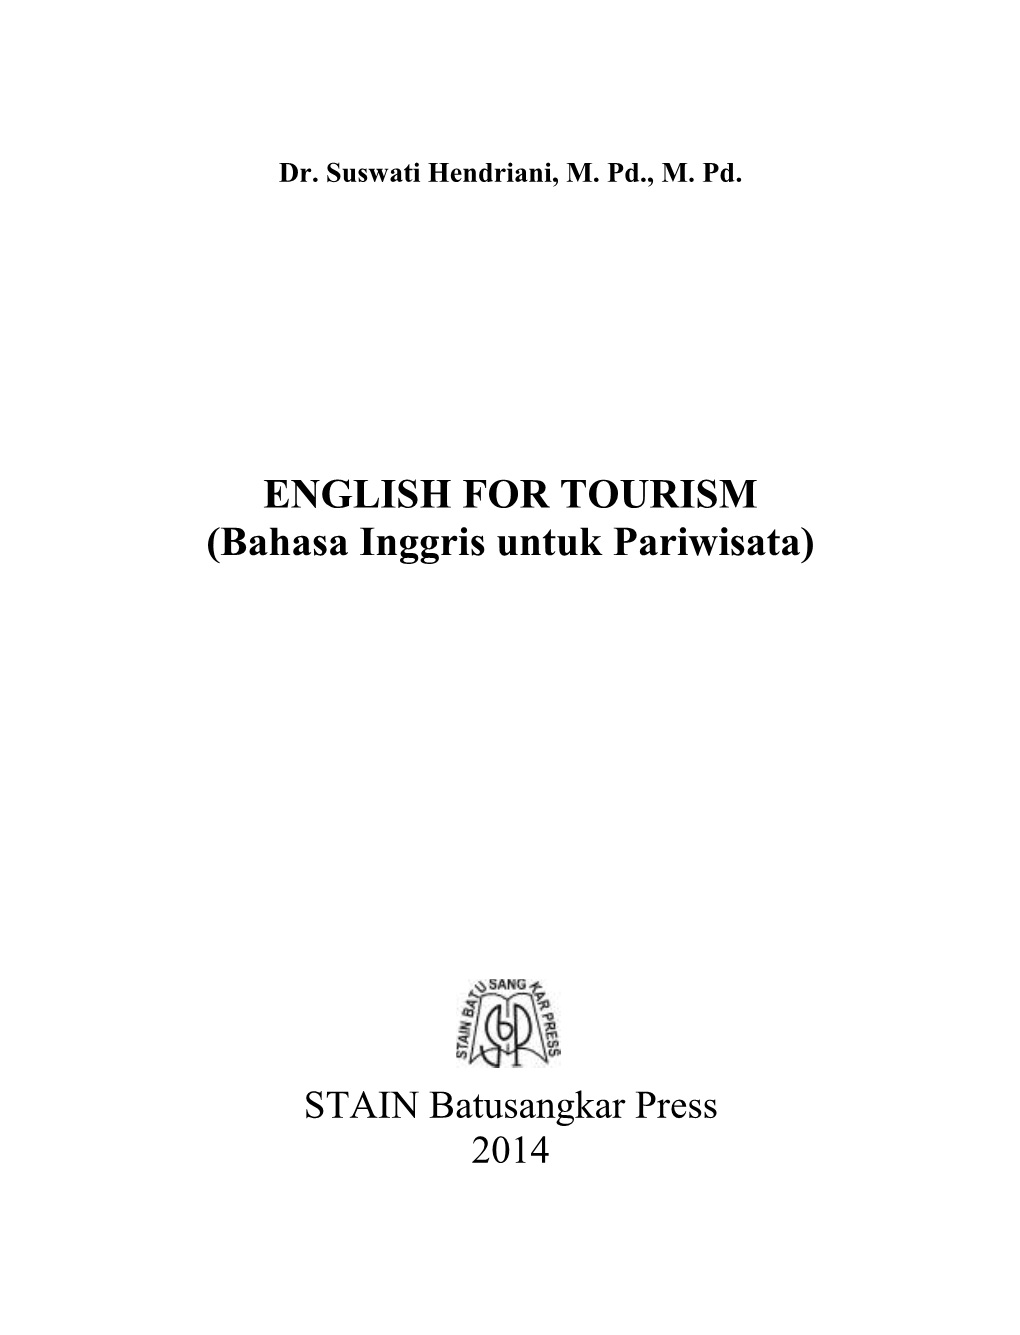 ENGLISH for TOURISM (Bahasa Inggris Untuk Pariwisata)